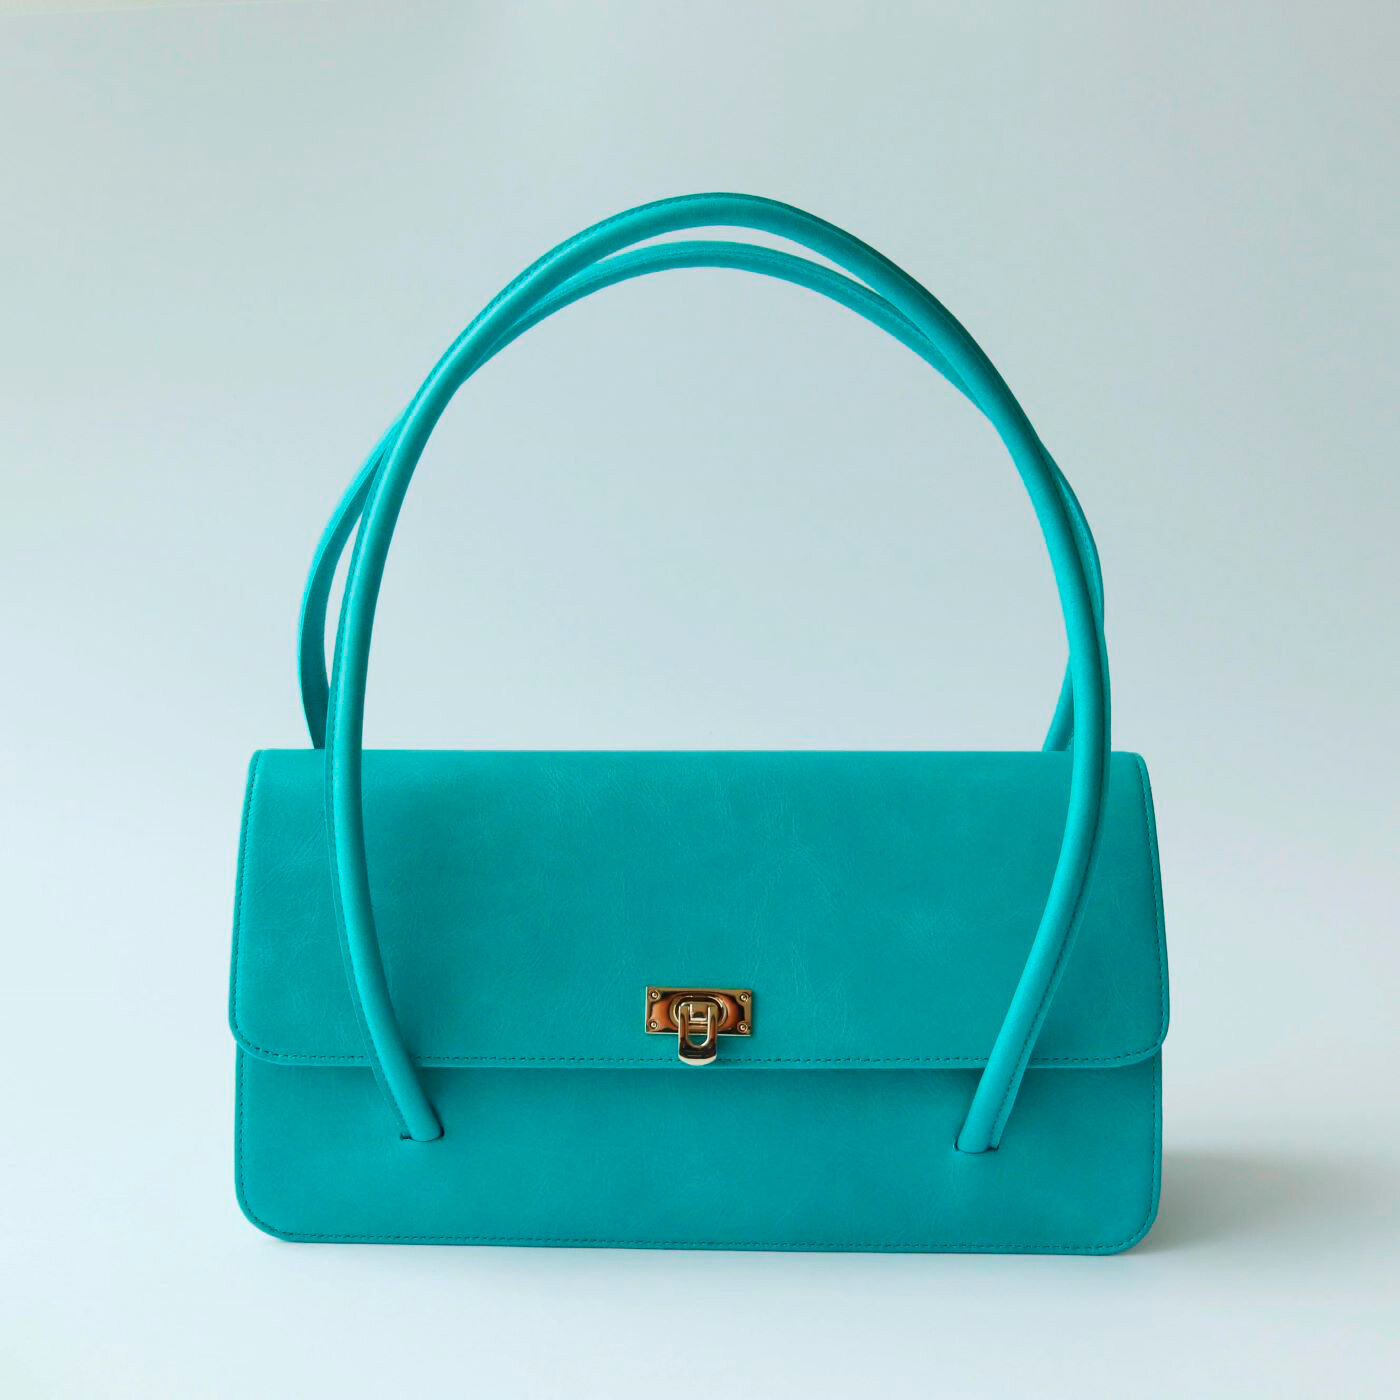 ＆Stories|ファッションスタイリストと作った 職人本革のファシナンバッグ〈ターコイズグリーン〉|鮮やかなターコイズグリーンのハンドバッグ。